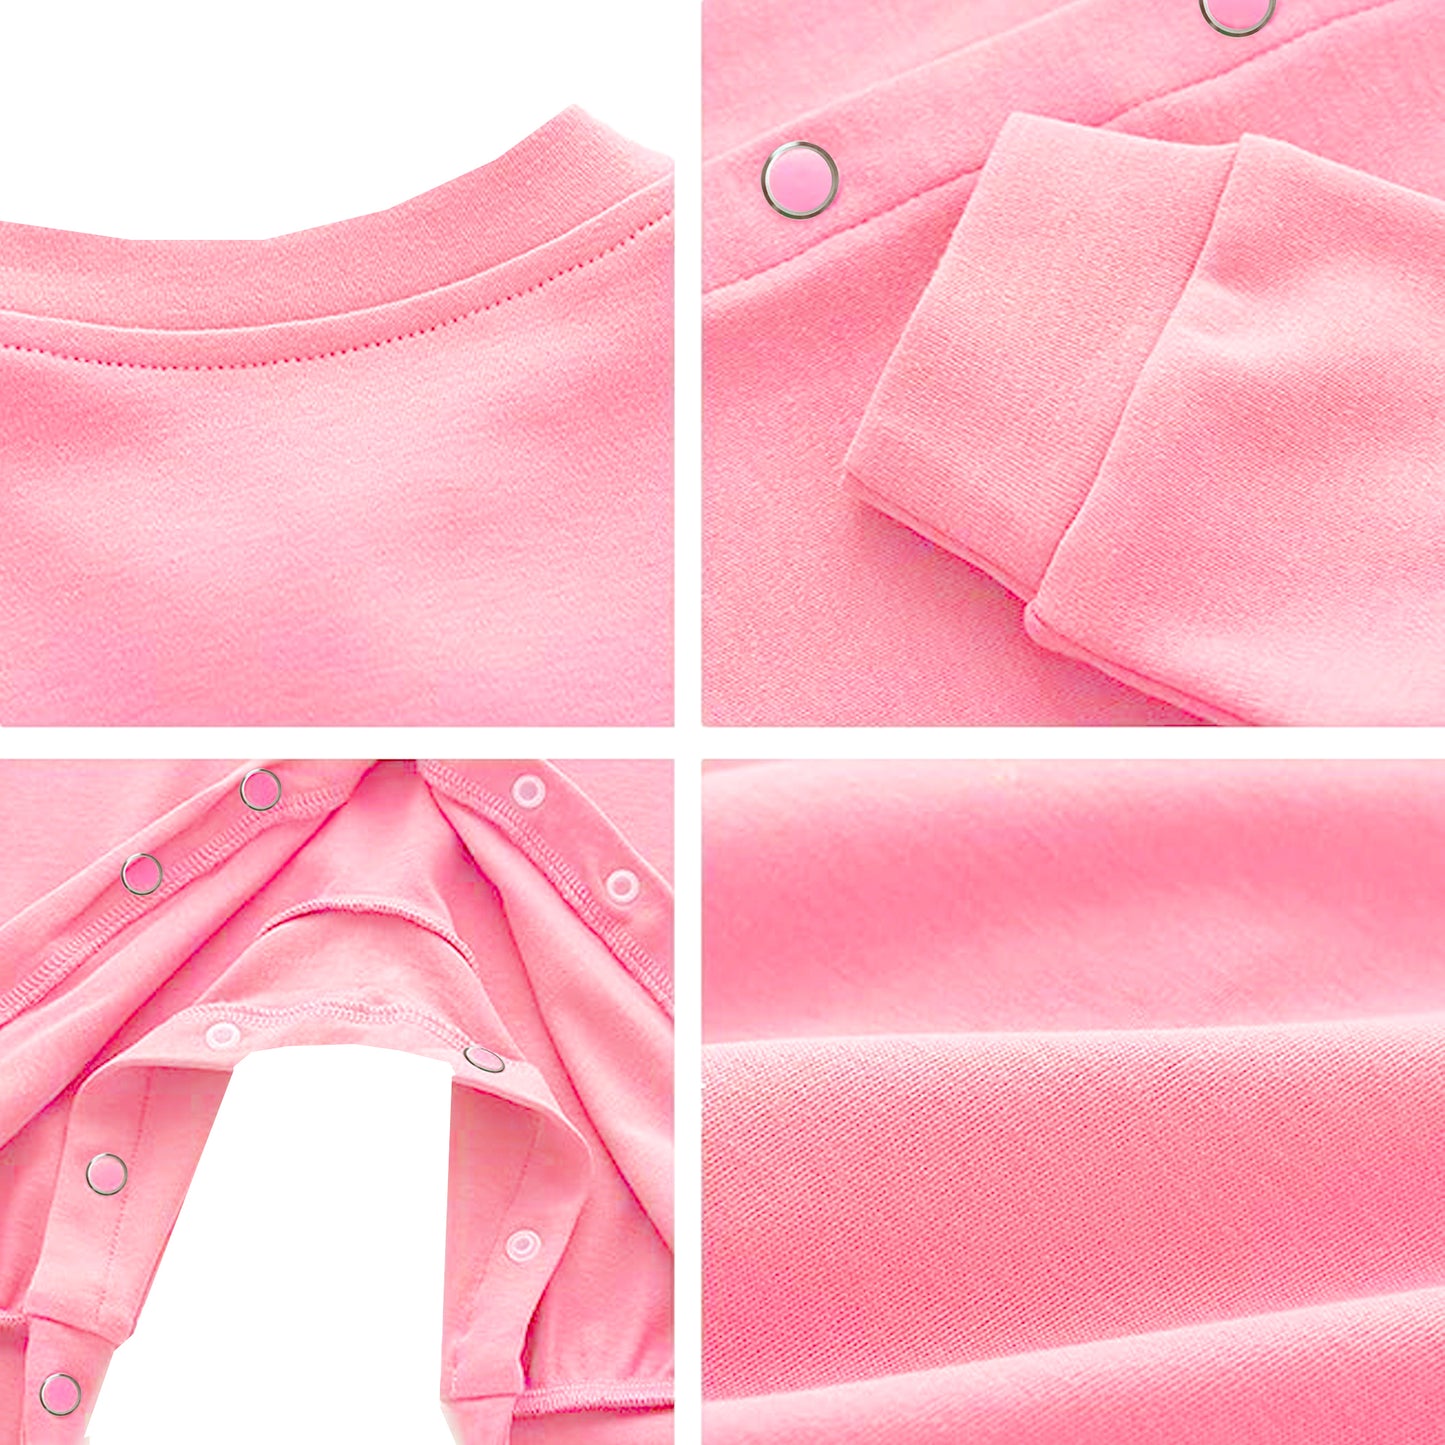 Full Length Printed Baby Footies Sleepsuit Romper Pack of 3-(Light Pink)